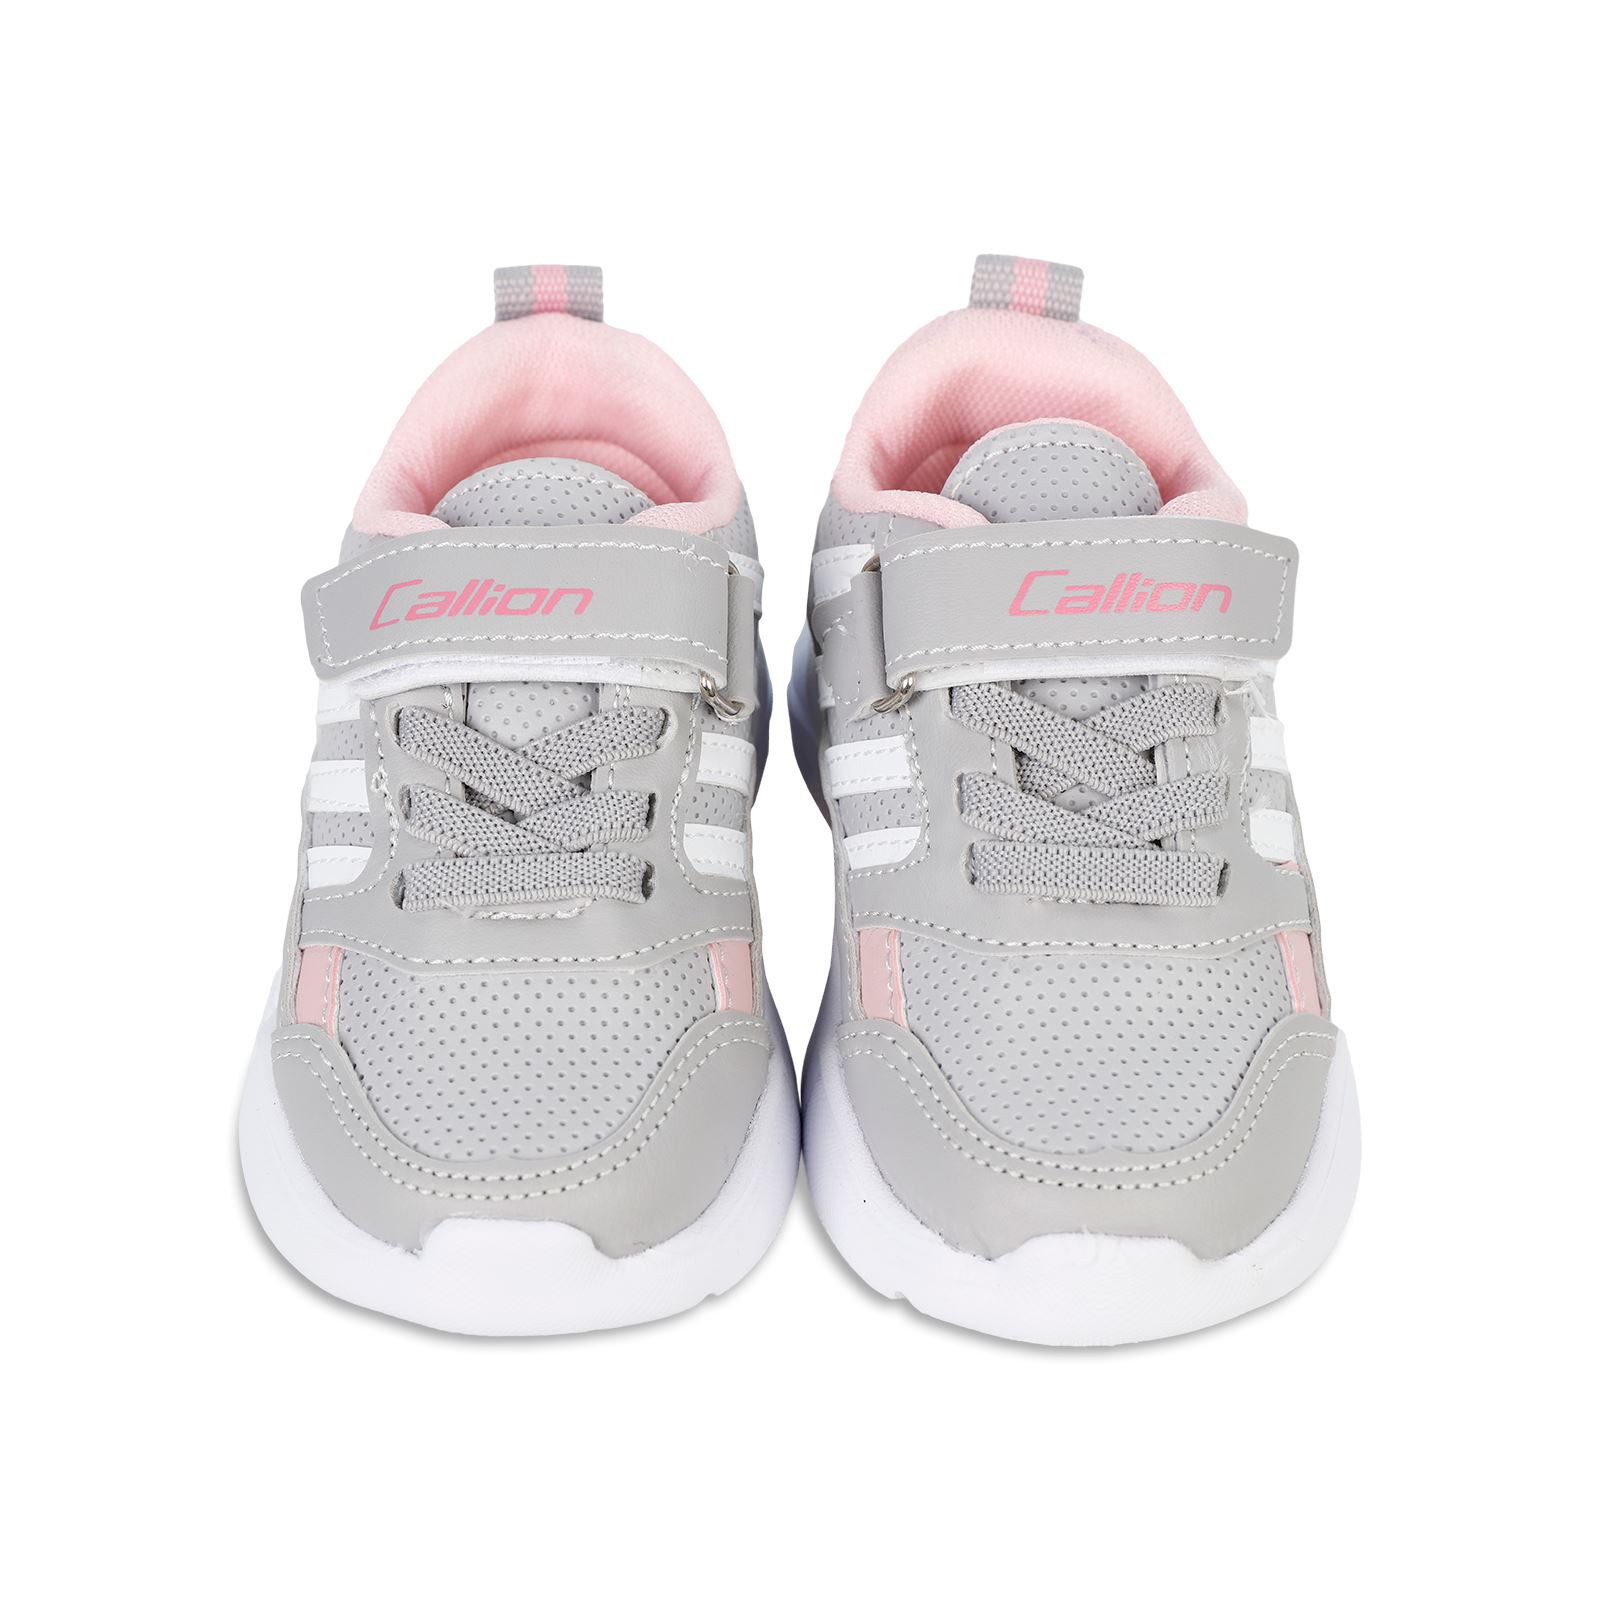 Callion Kız Çocuk Işıklı Spor Ayakkabı 22-25 Numara Beyaz